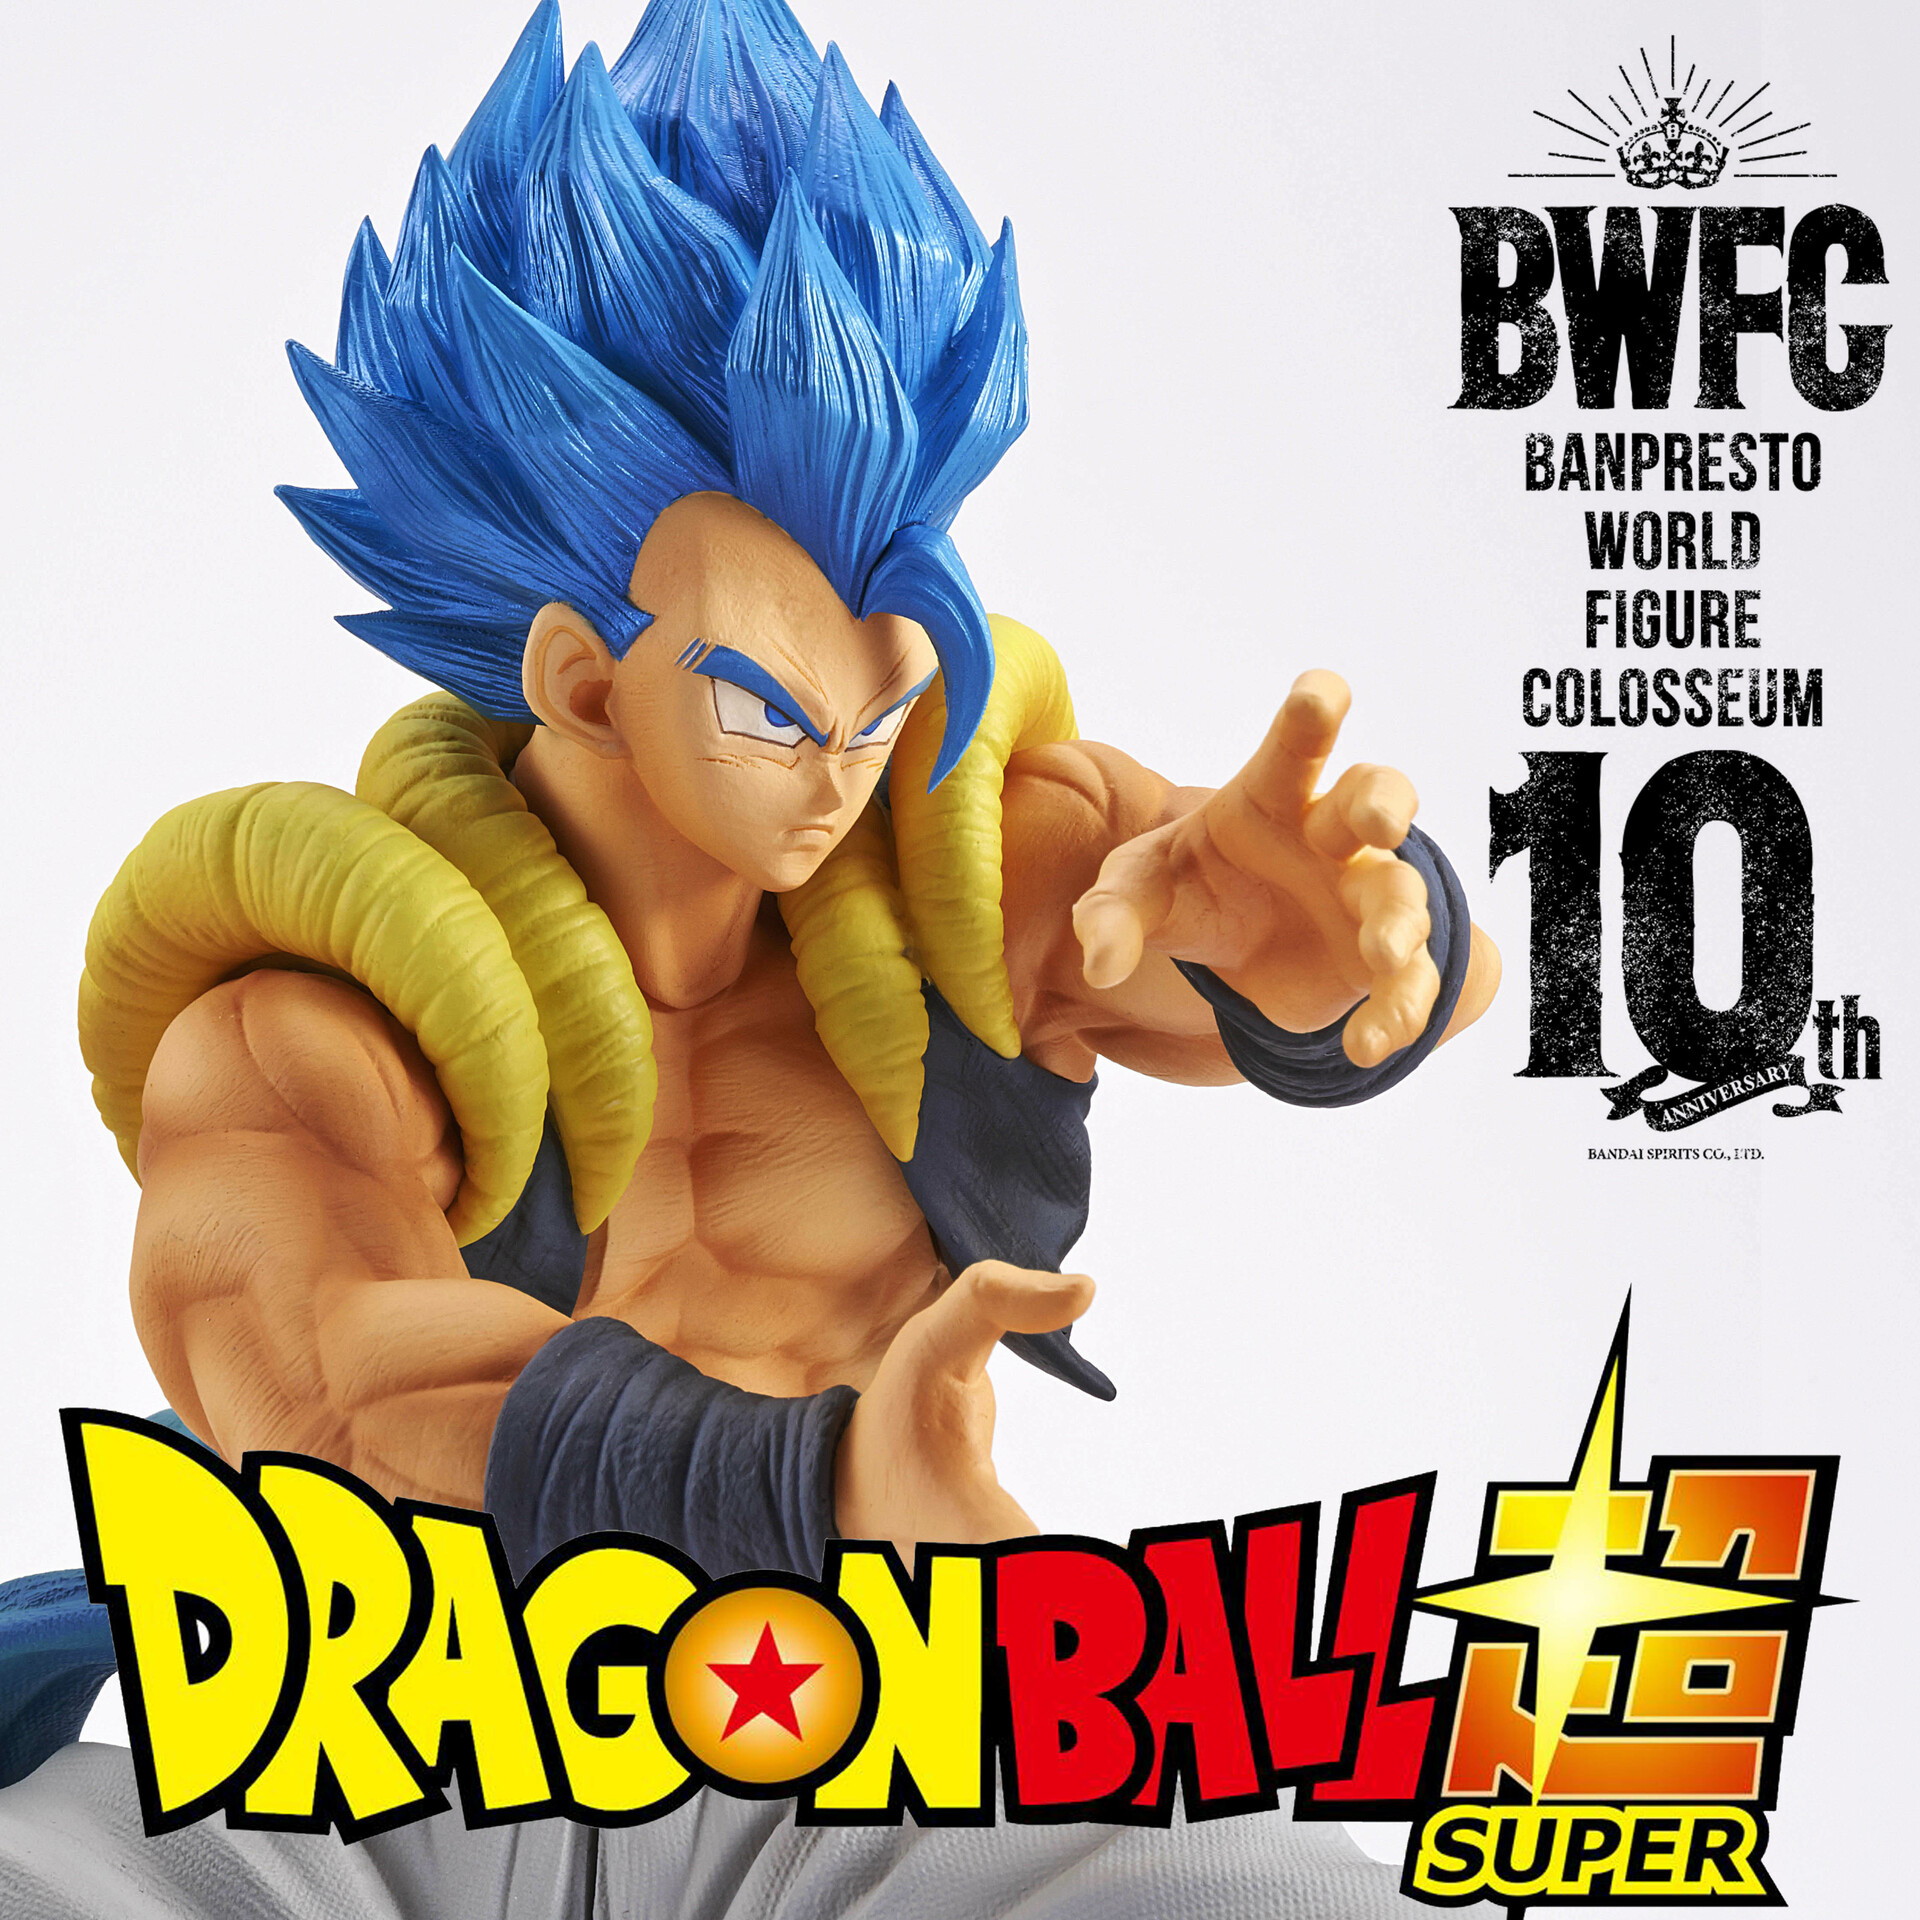 Dragonball BWCF World Figure Colosseum Gogeta Figure Banpresto 100% authentic 